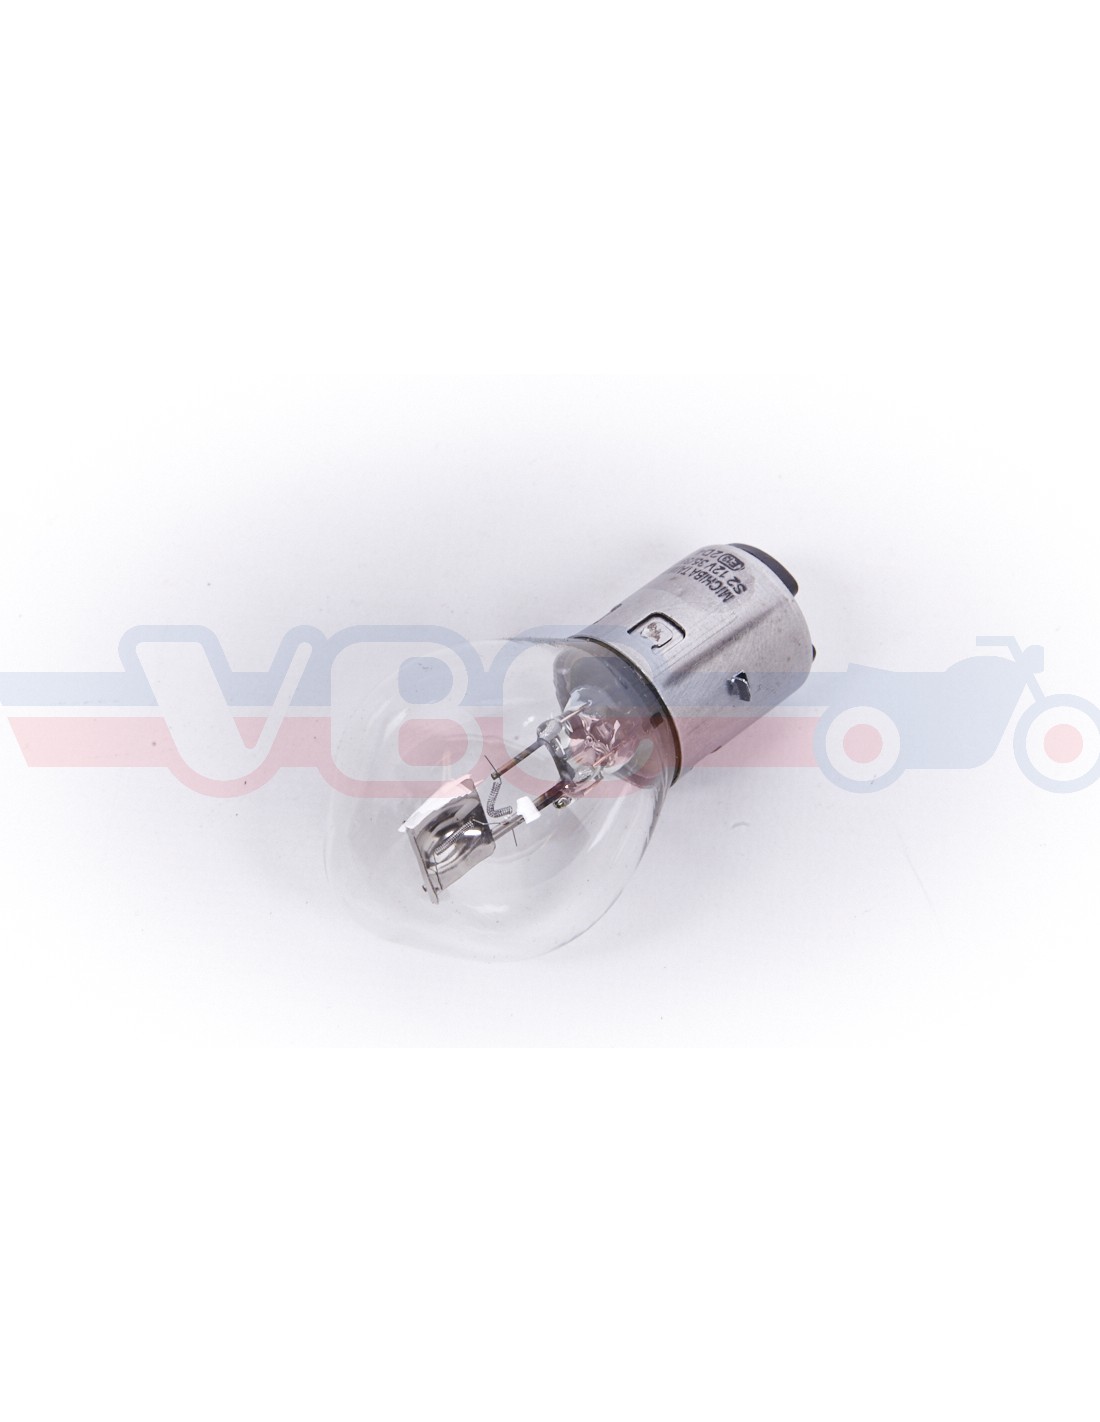 Ampoule Bilux 12V 35/ 35W - BAX15d - ampoule avec petit culot